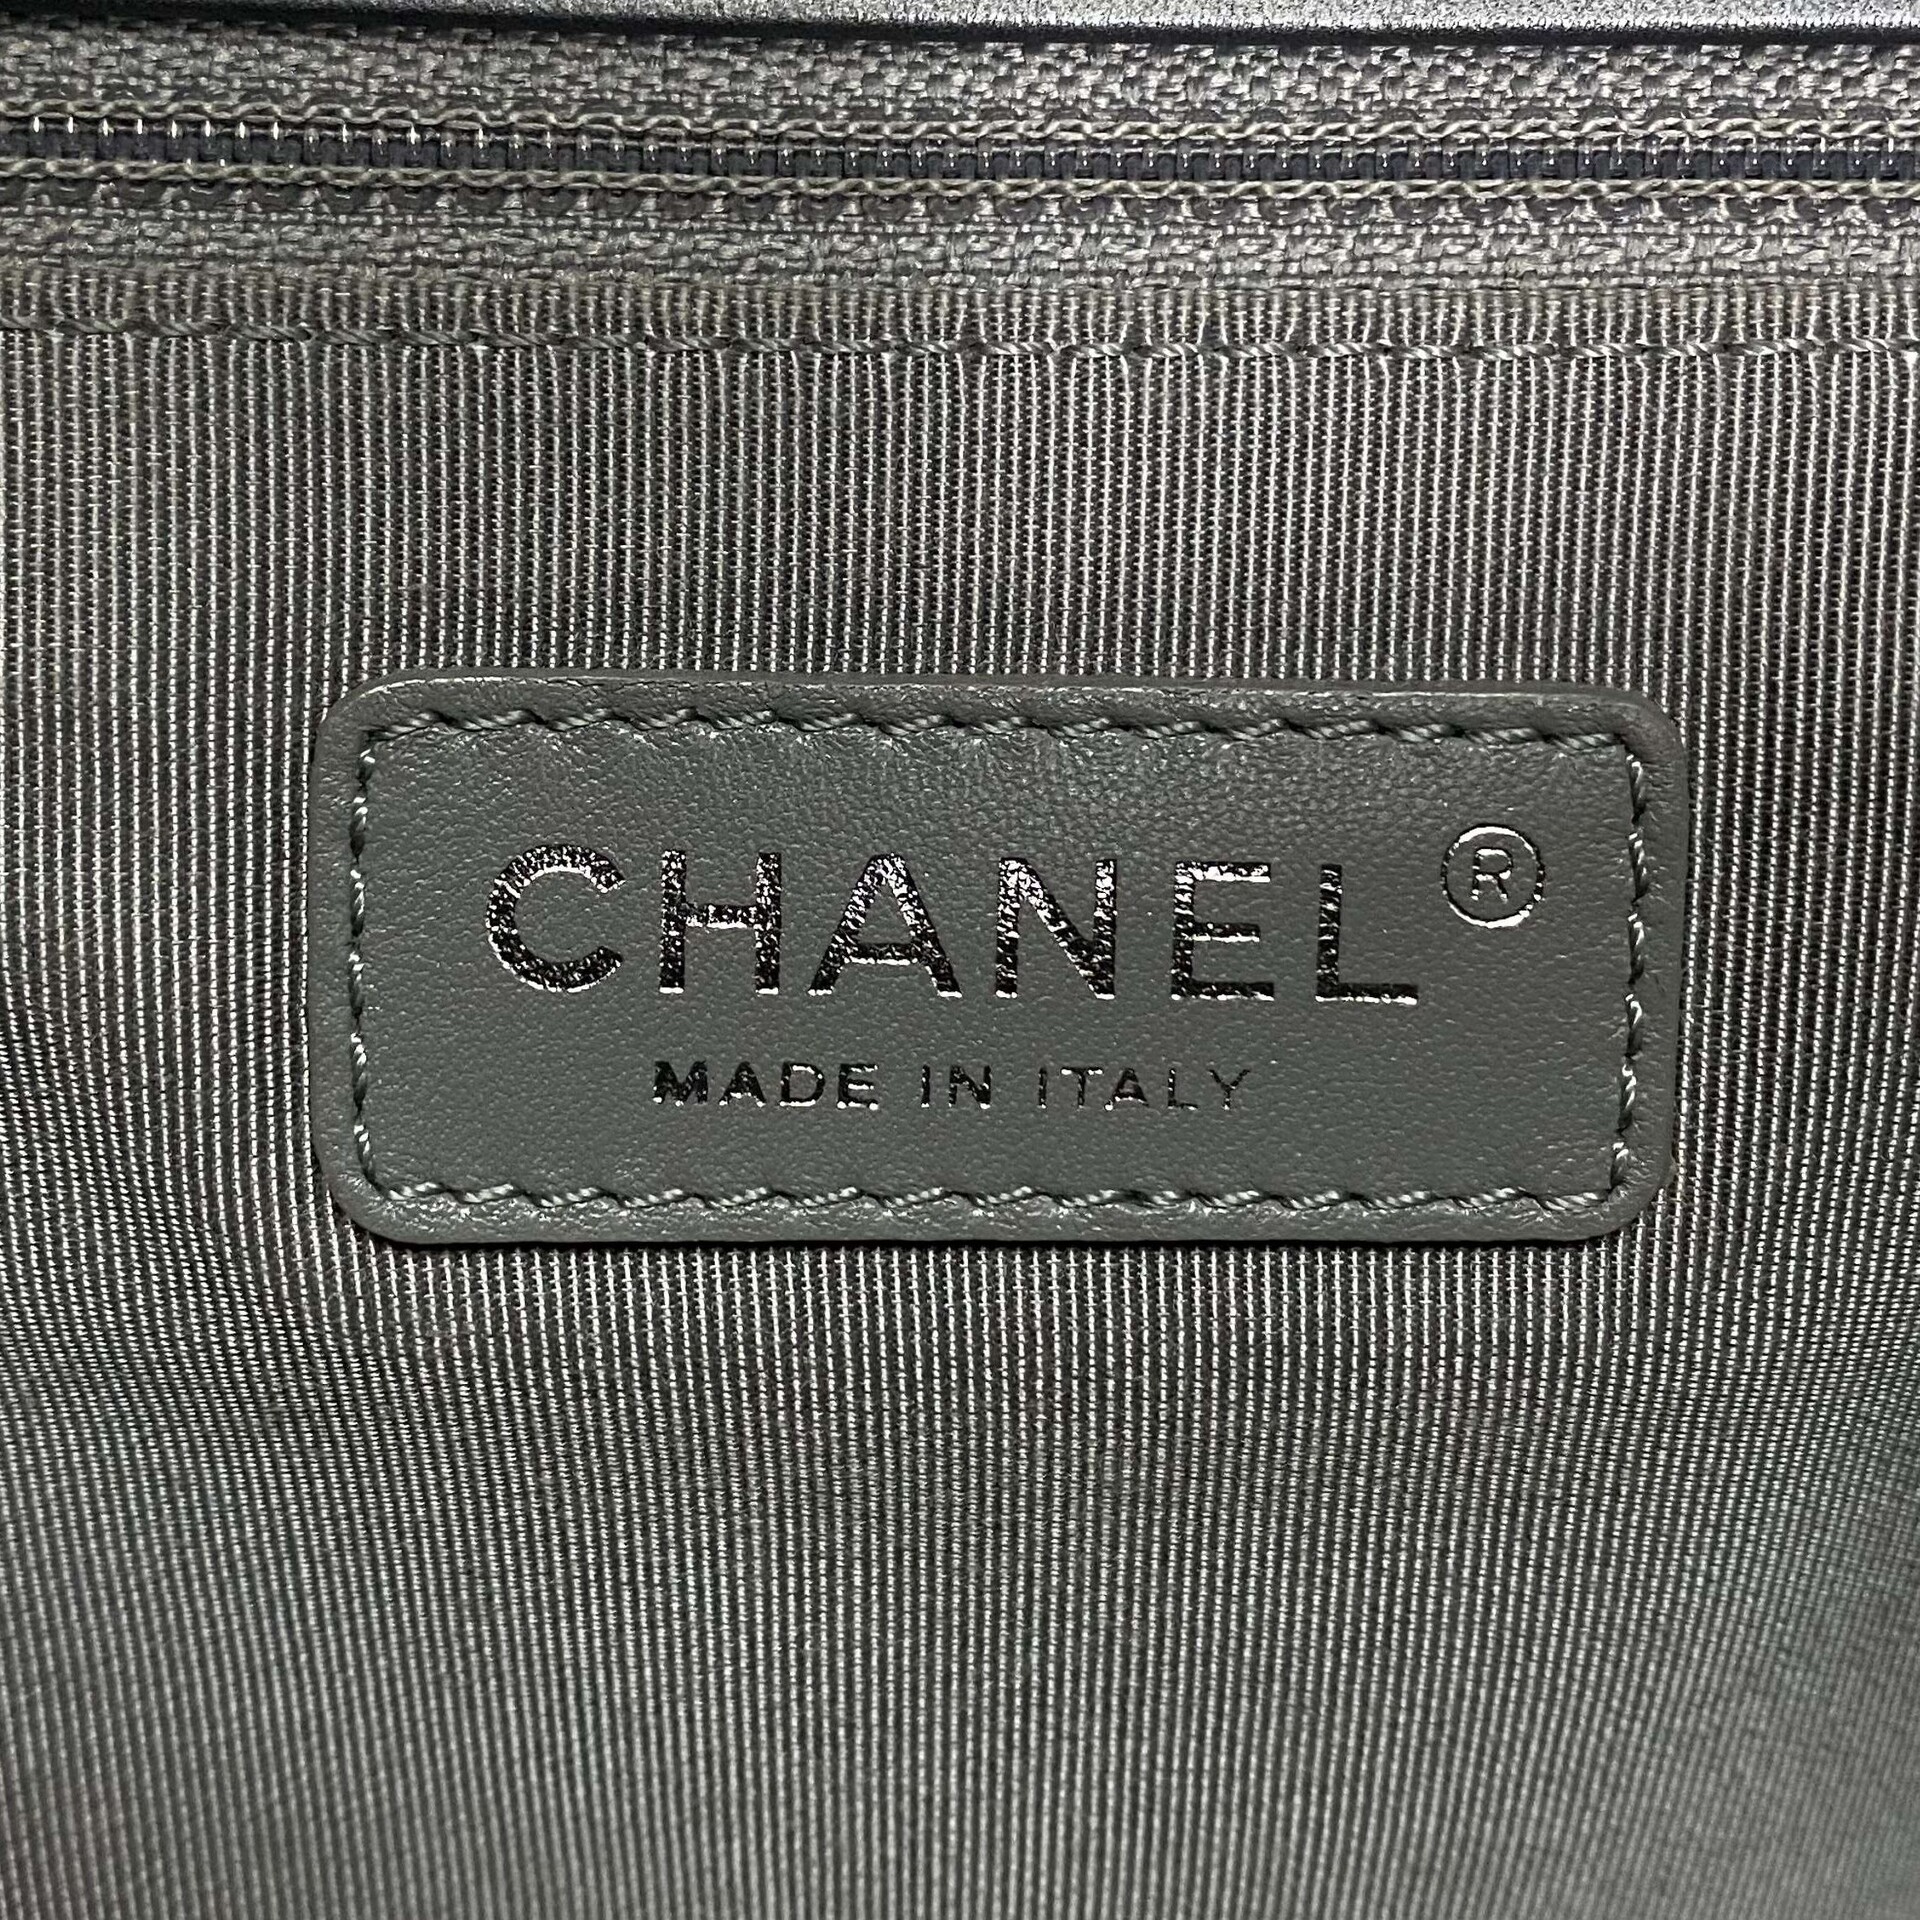 Bolsa Chanel Boy Metalizada